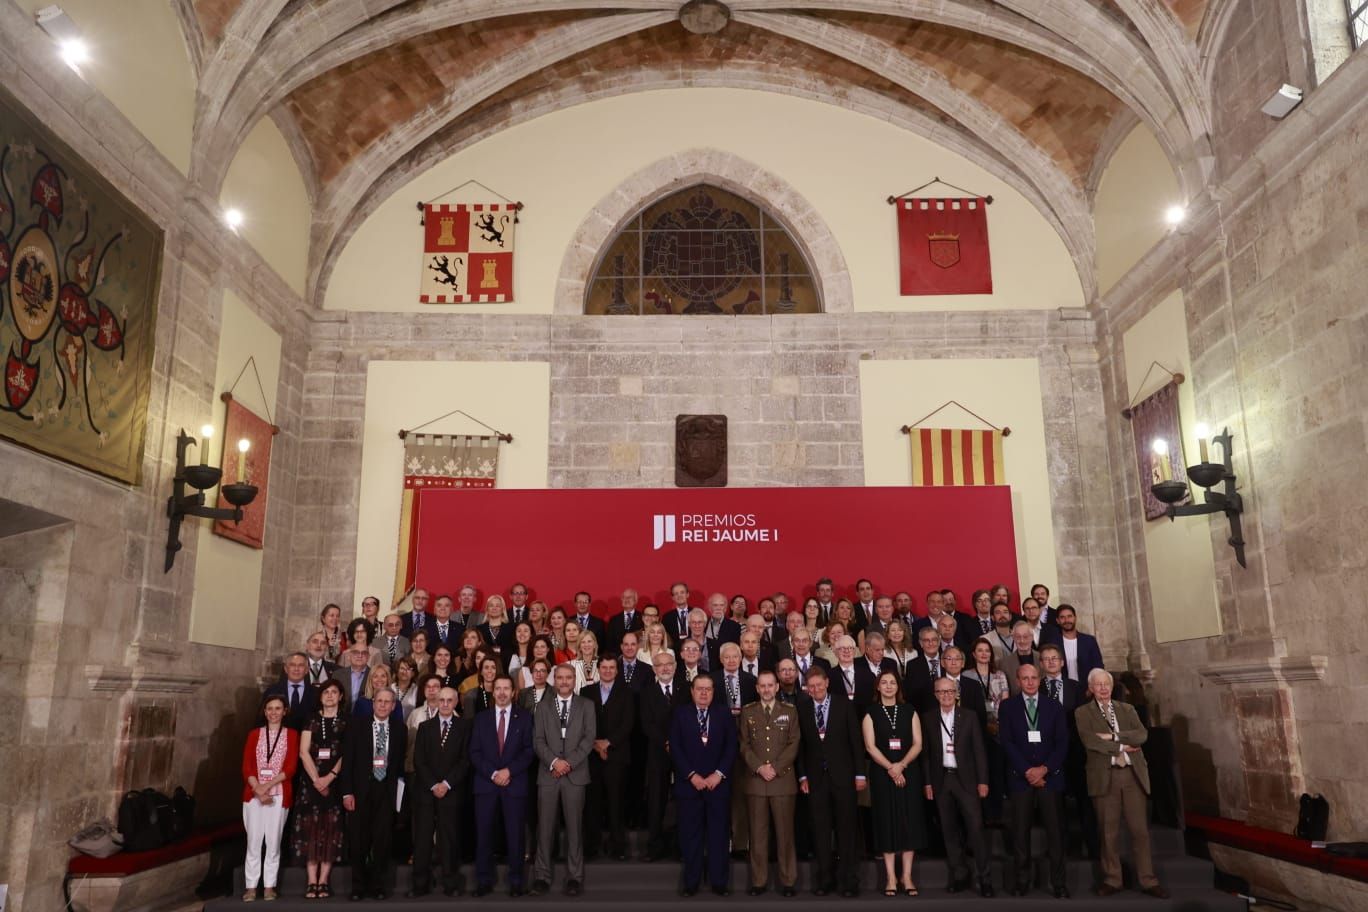 Varios premios Nobel visitan València por los Premios Rei Jaume I